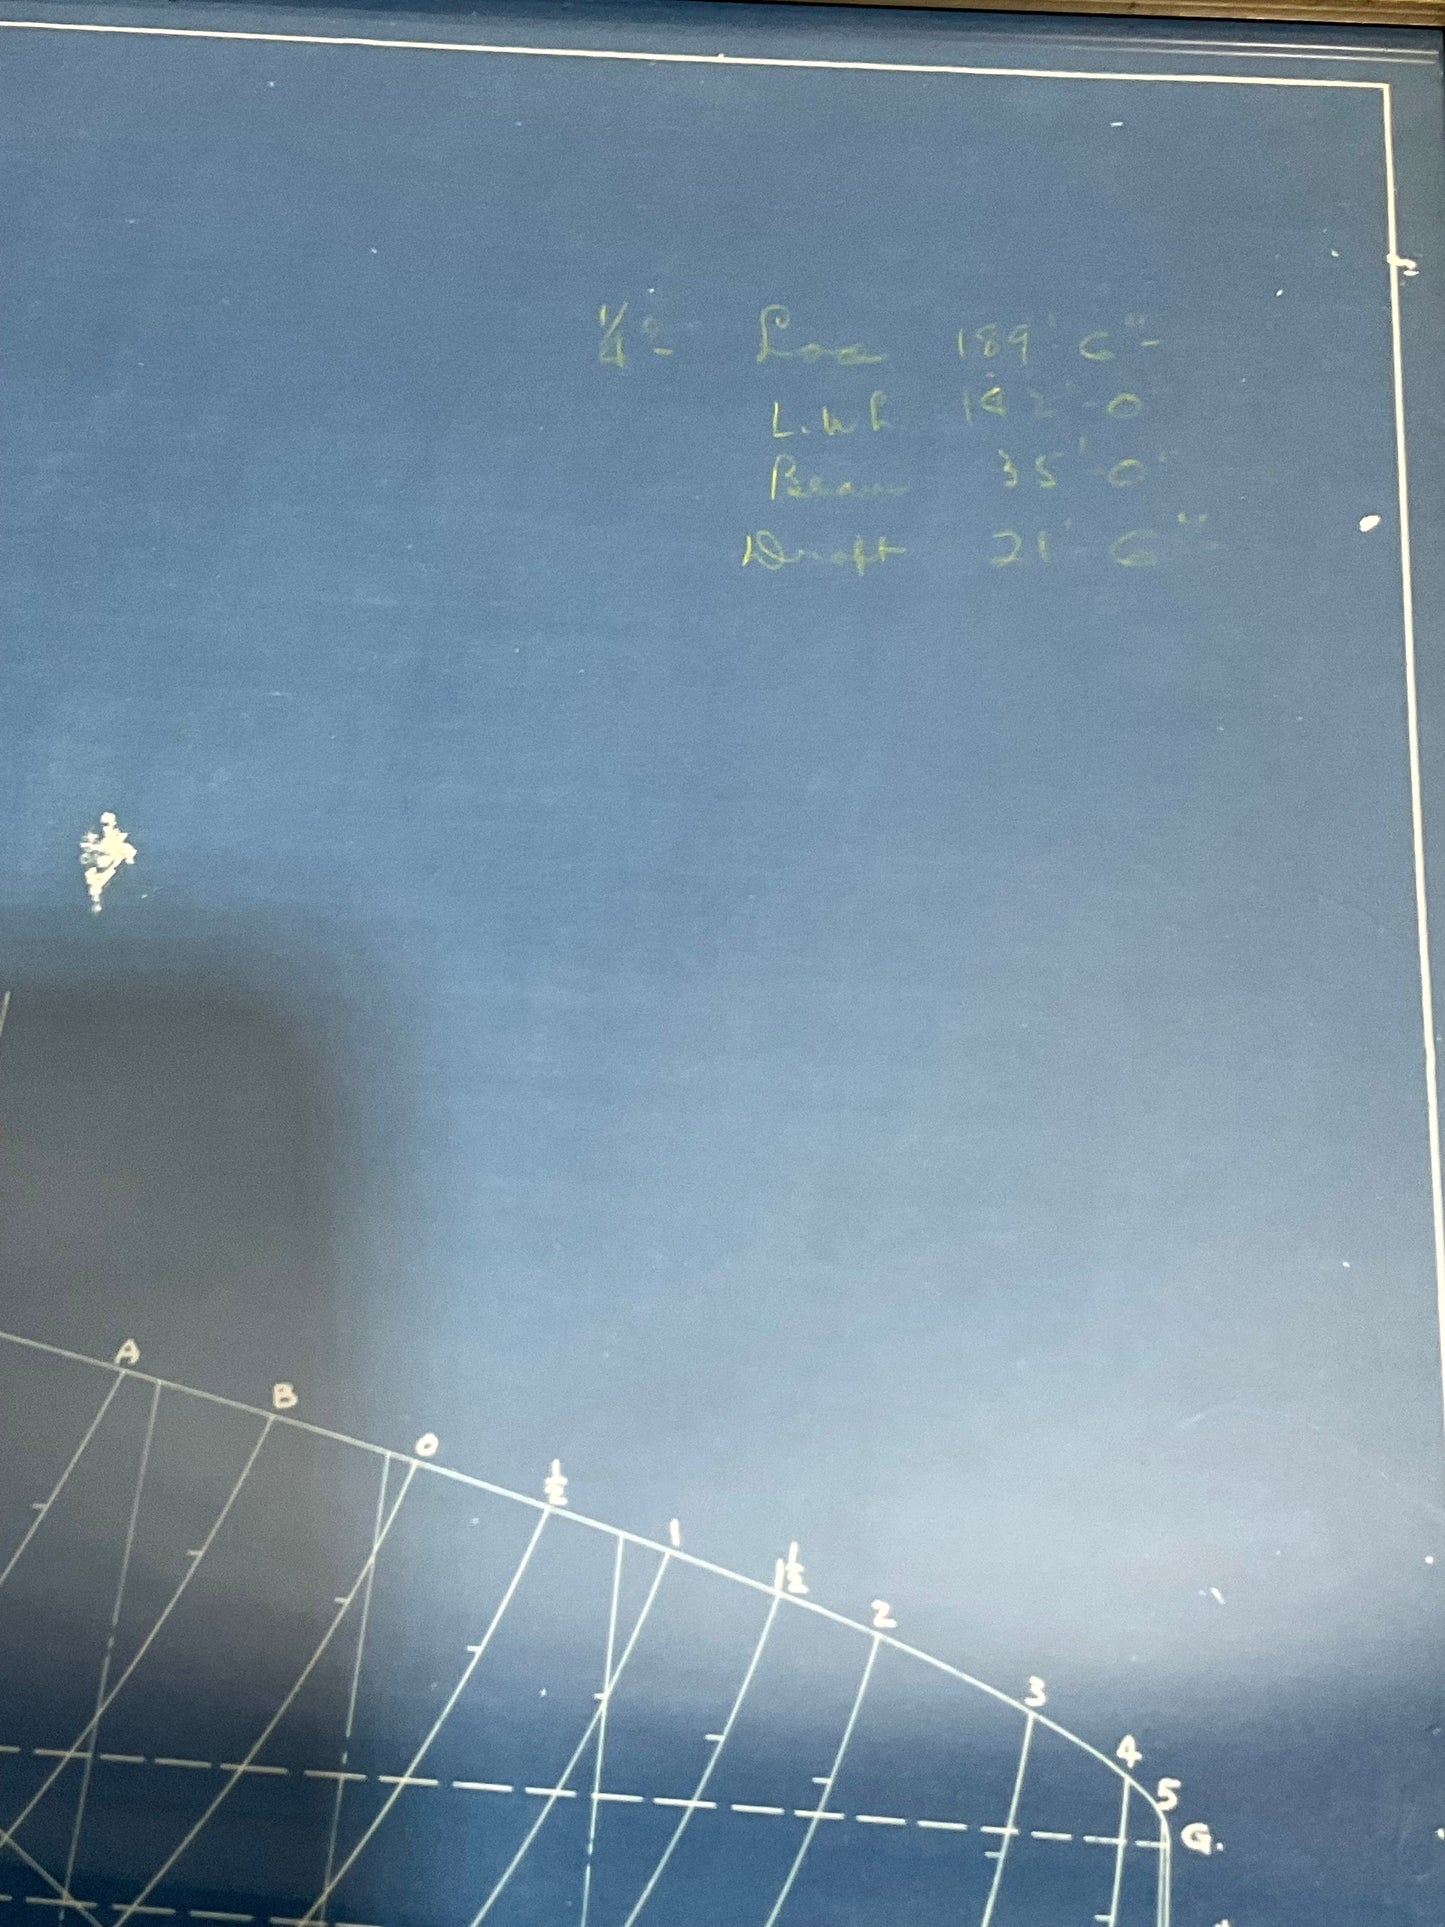 Yacht Blueprint of the Schooner Starling